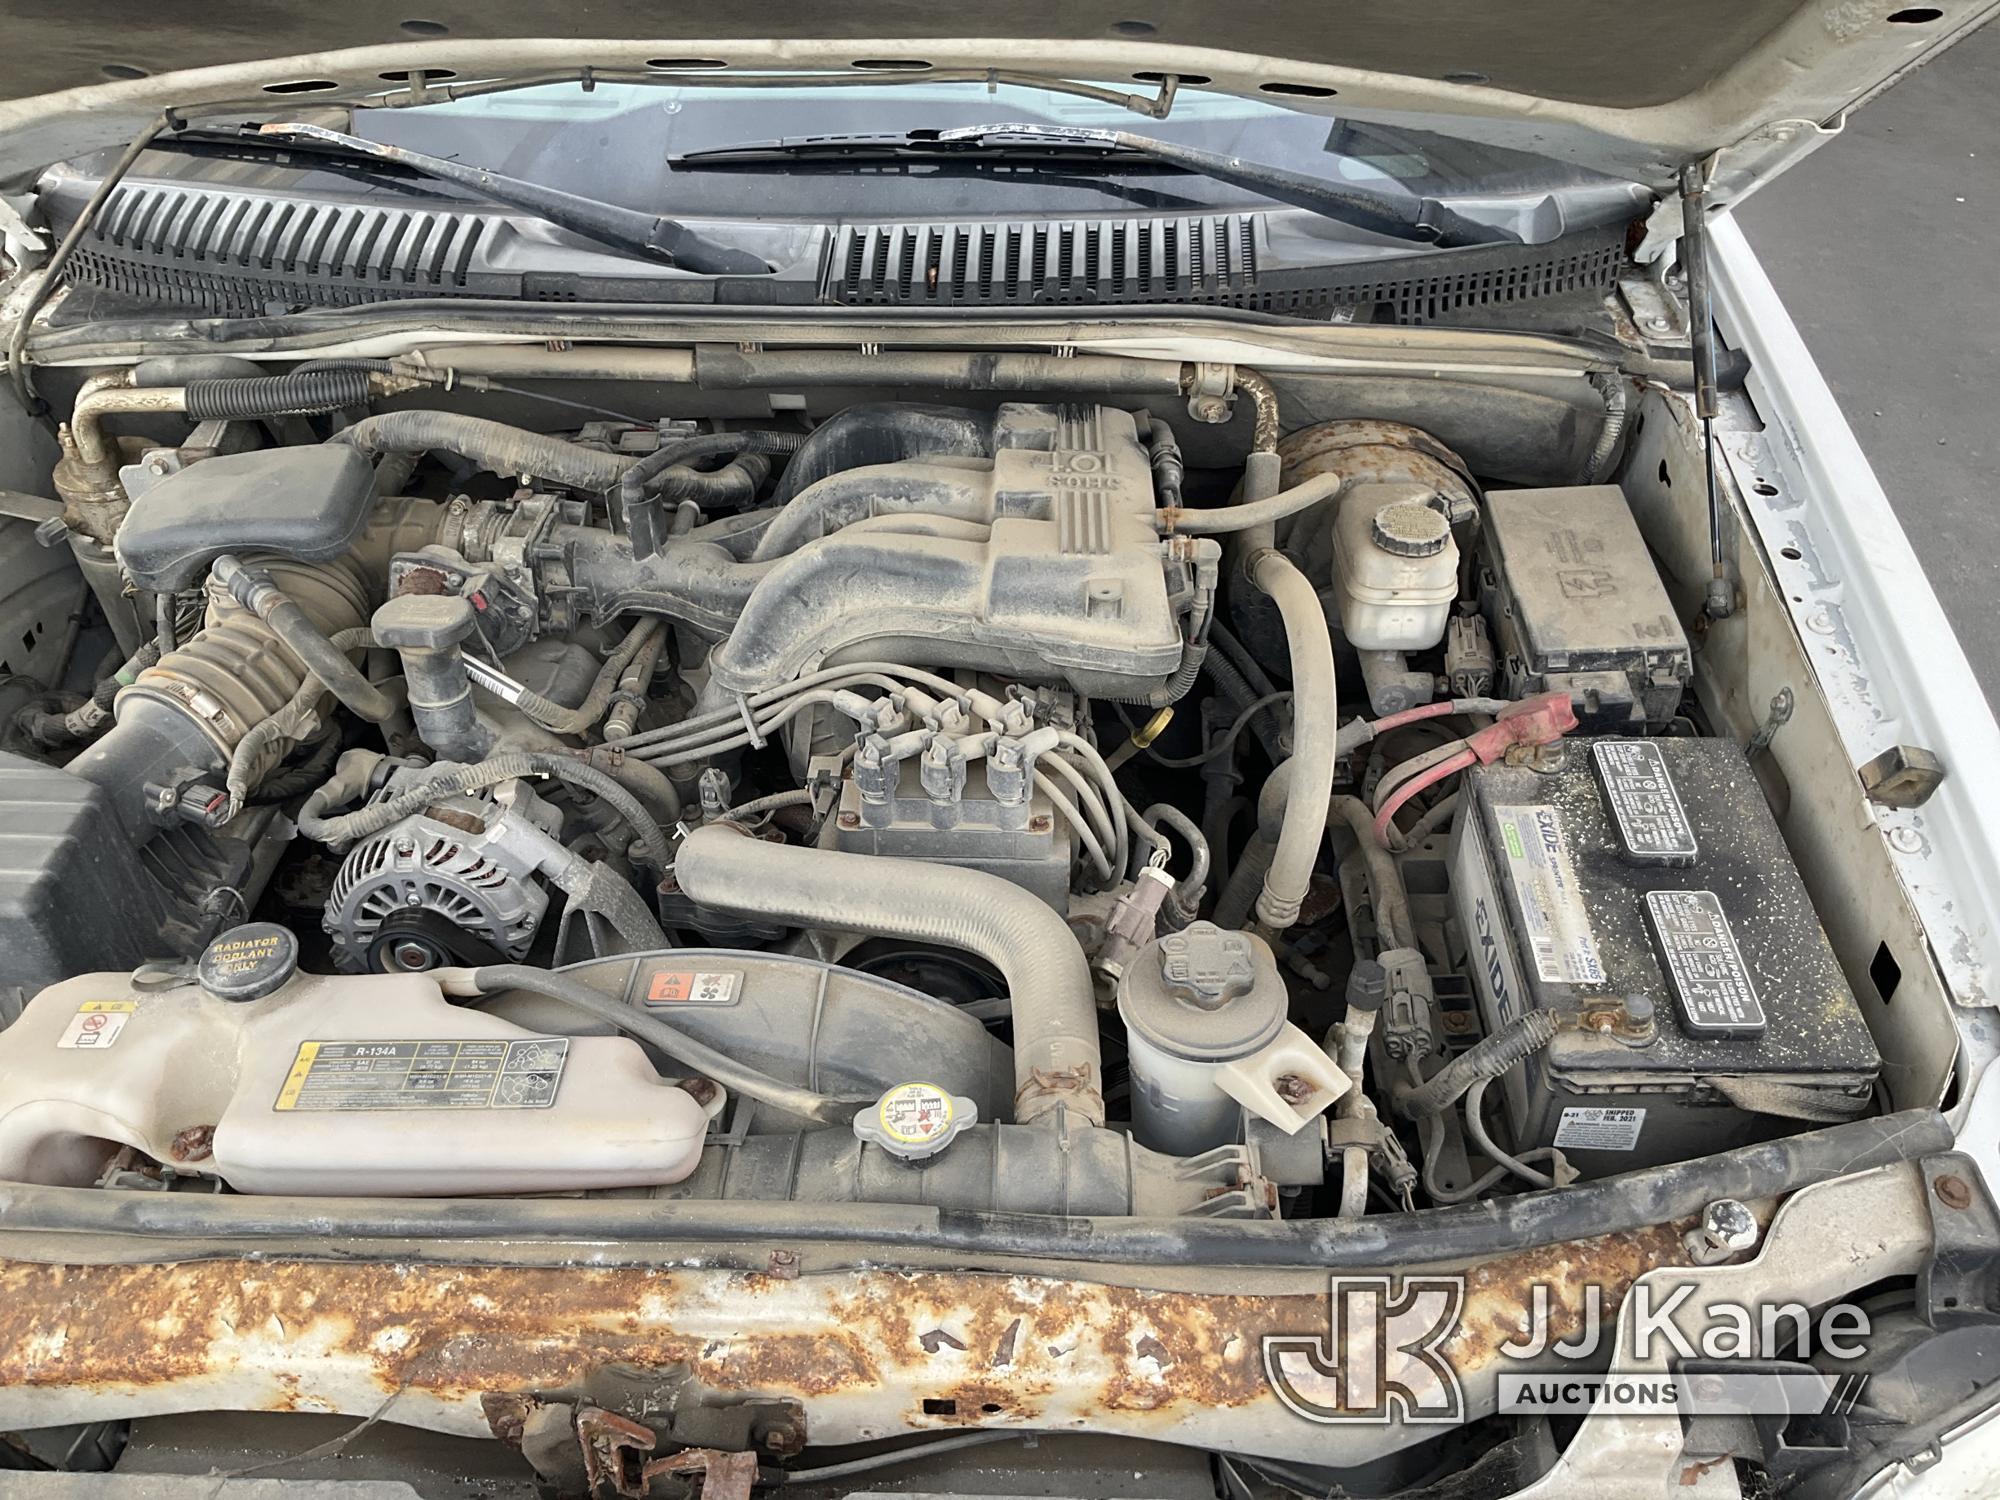 (Jurupa Valley, CA) 2010 Ford Explorer XLT 4x4 4-Door Sport Utility Vehicle Runs & Moves, Missing Ca